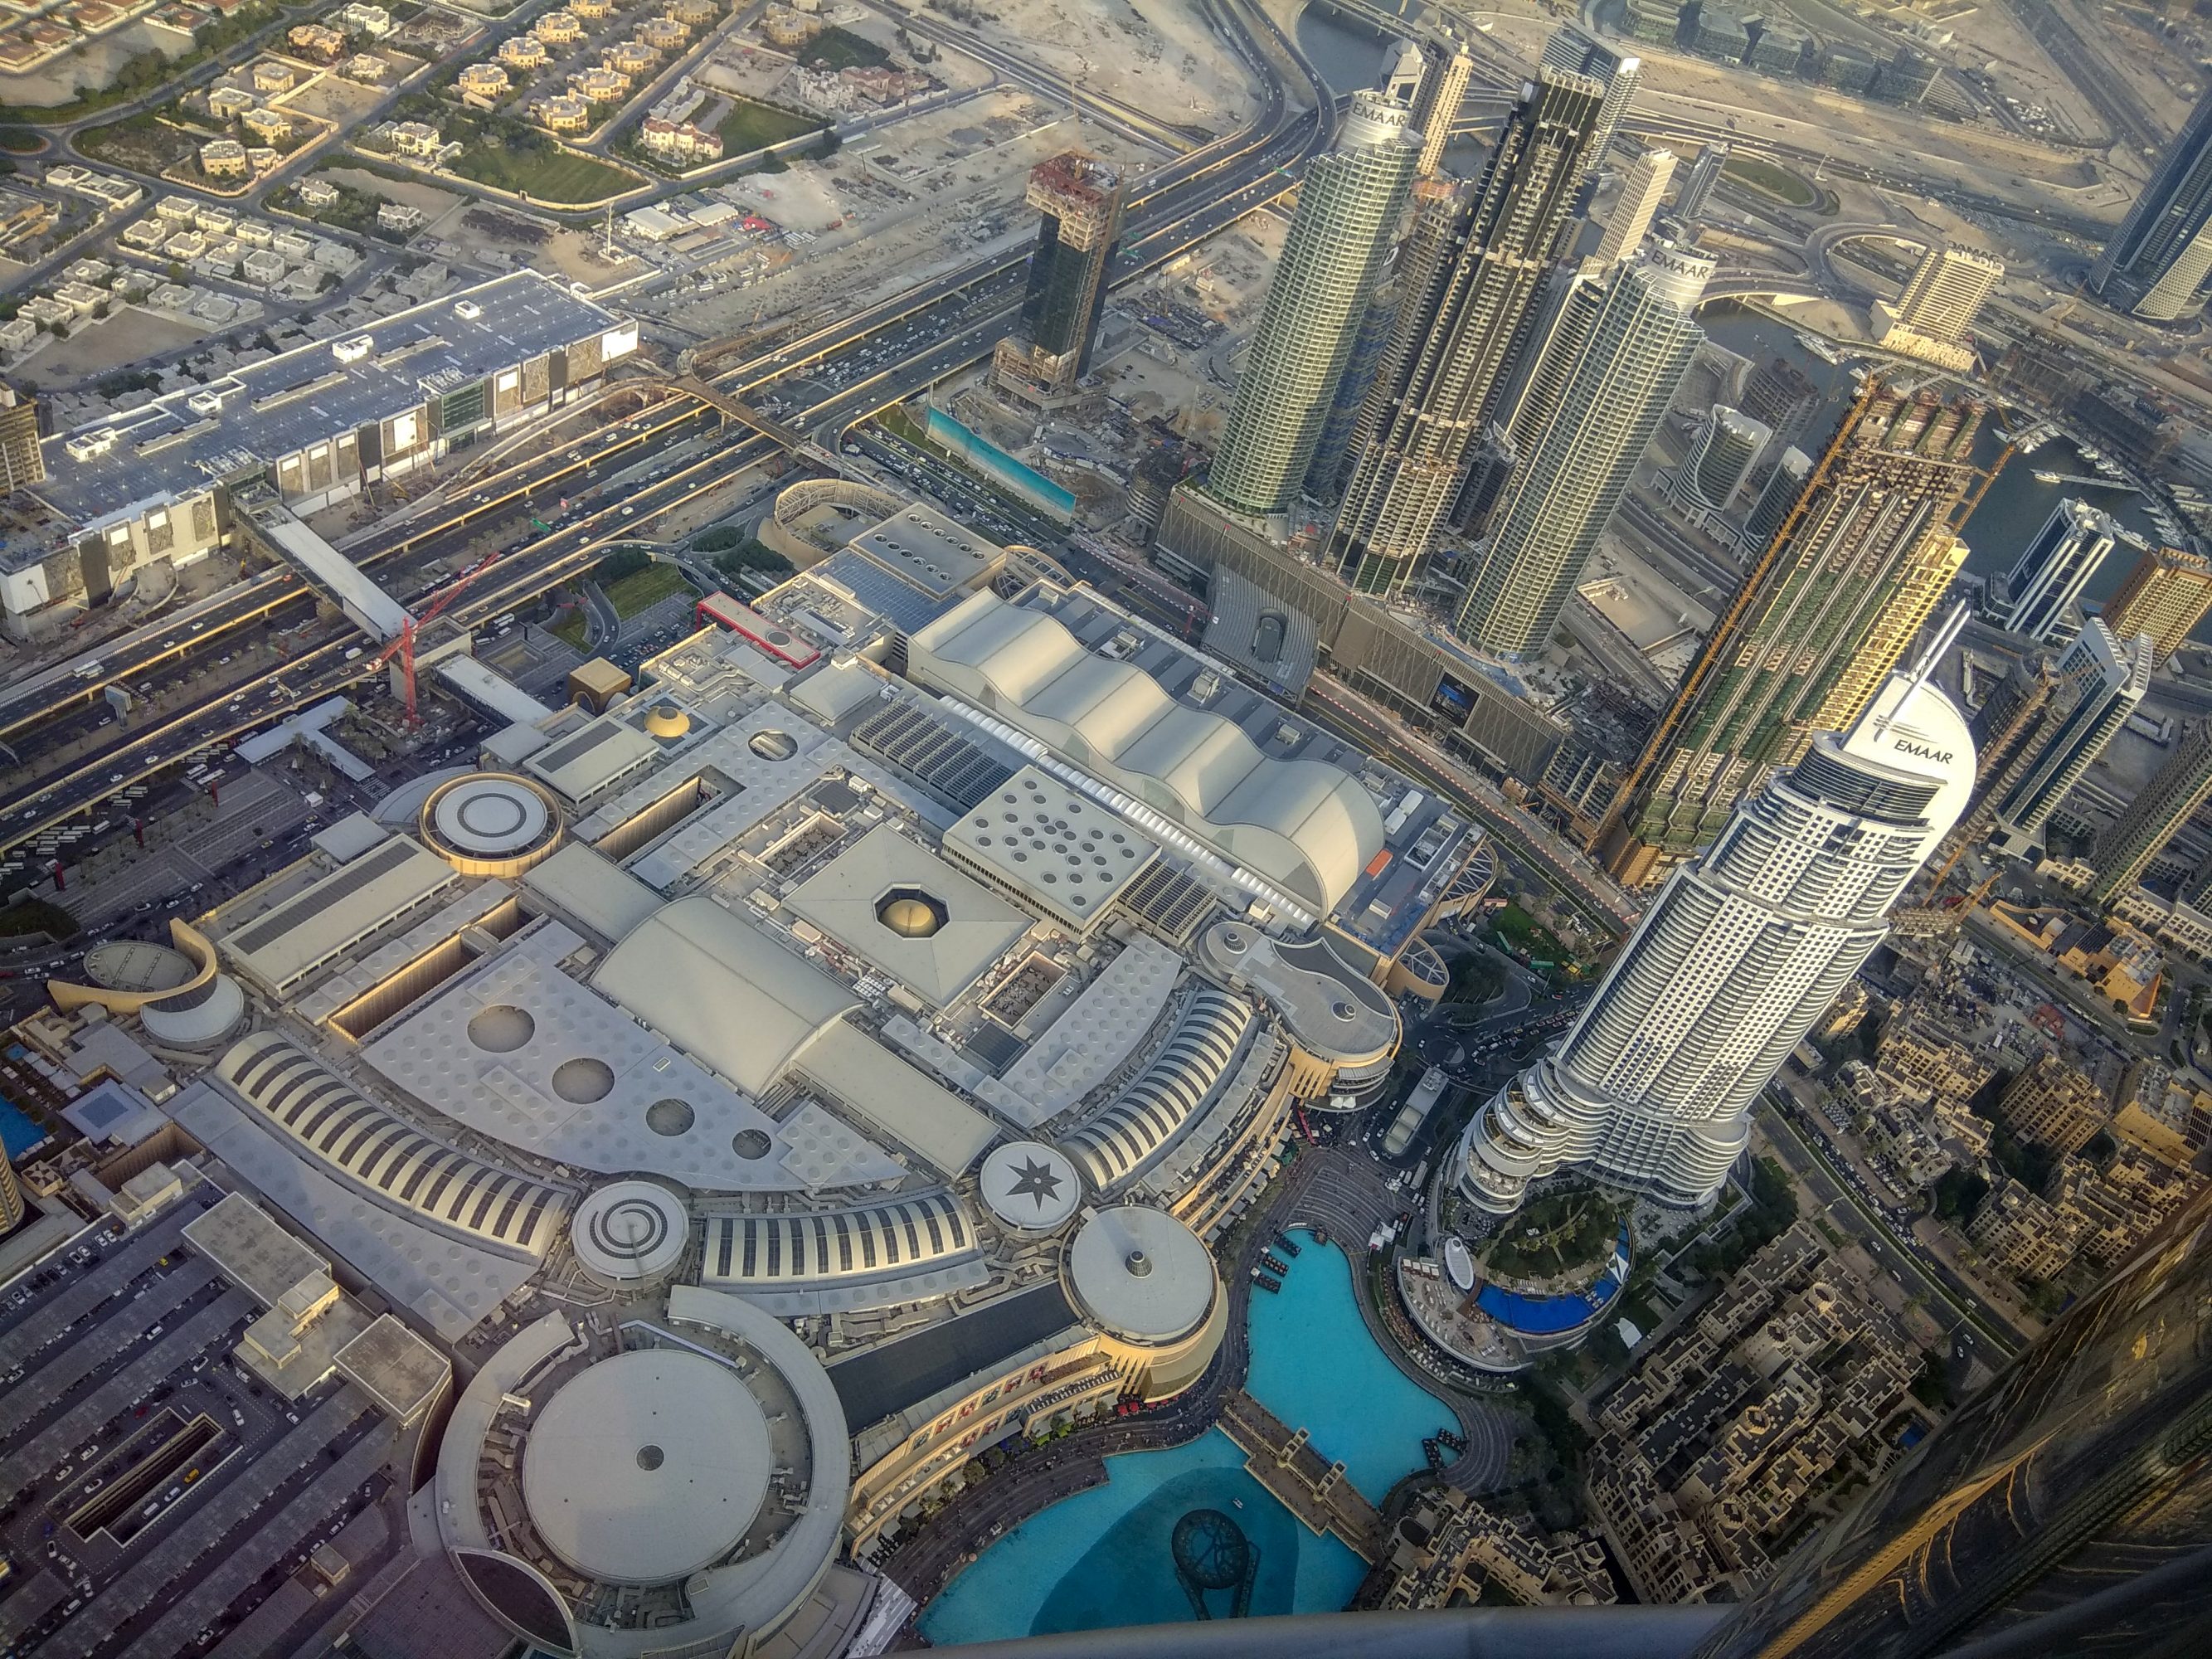 Views from At the Top, Burj Khalifa